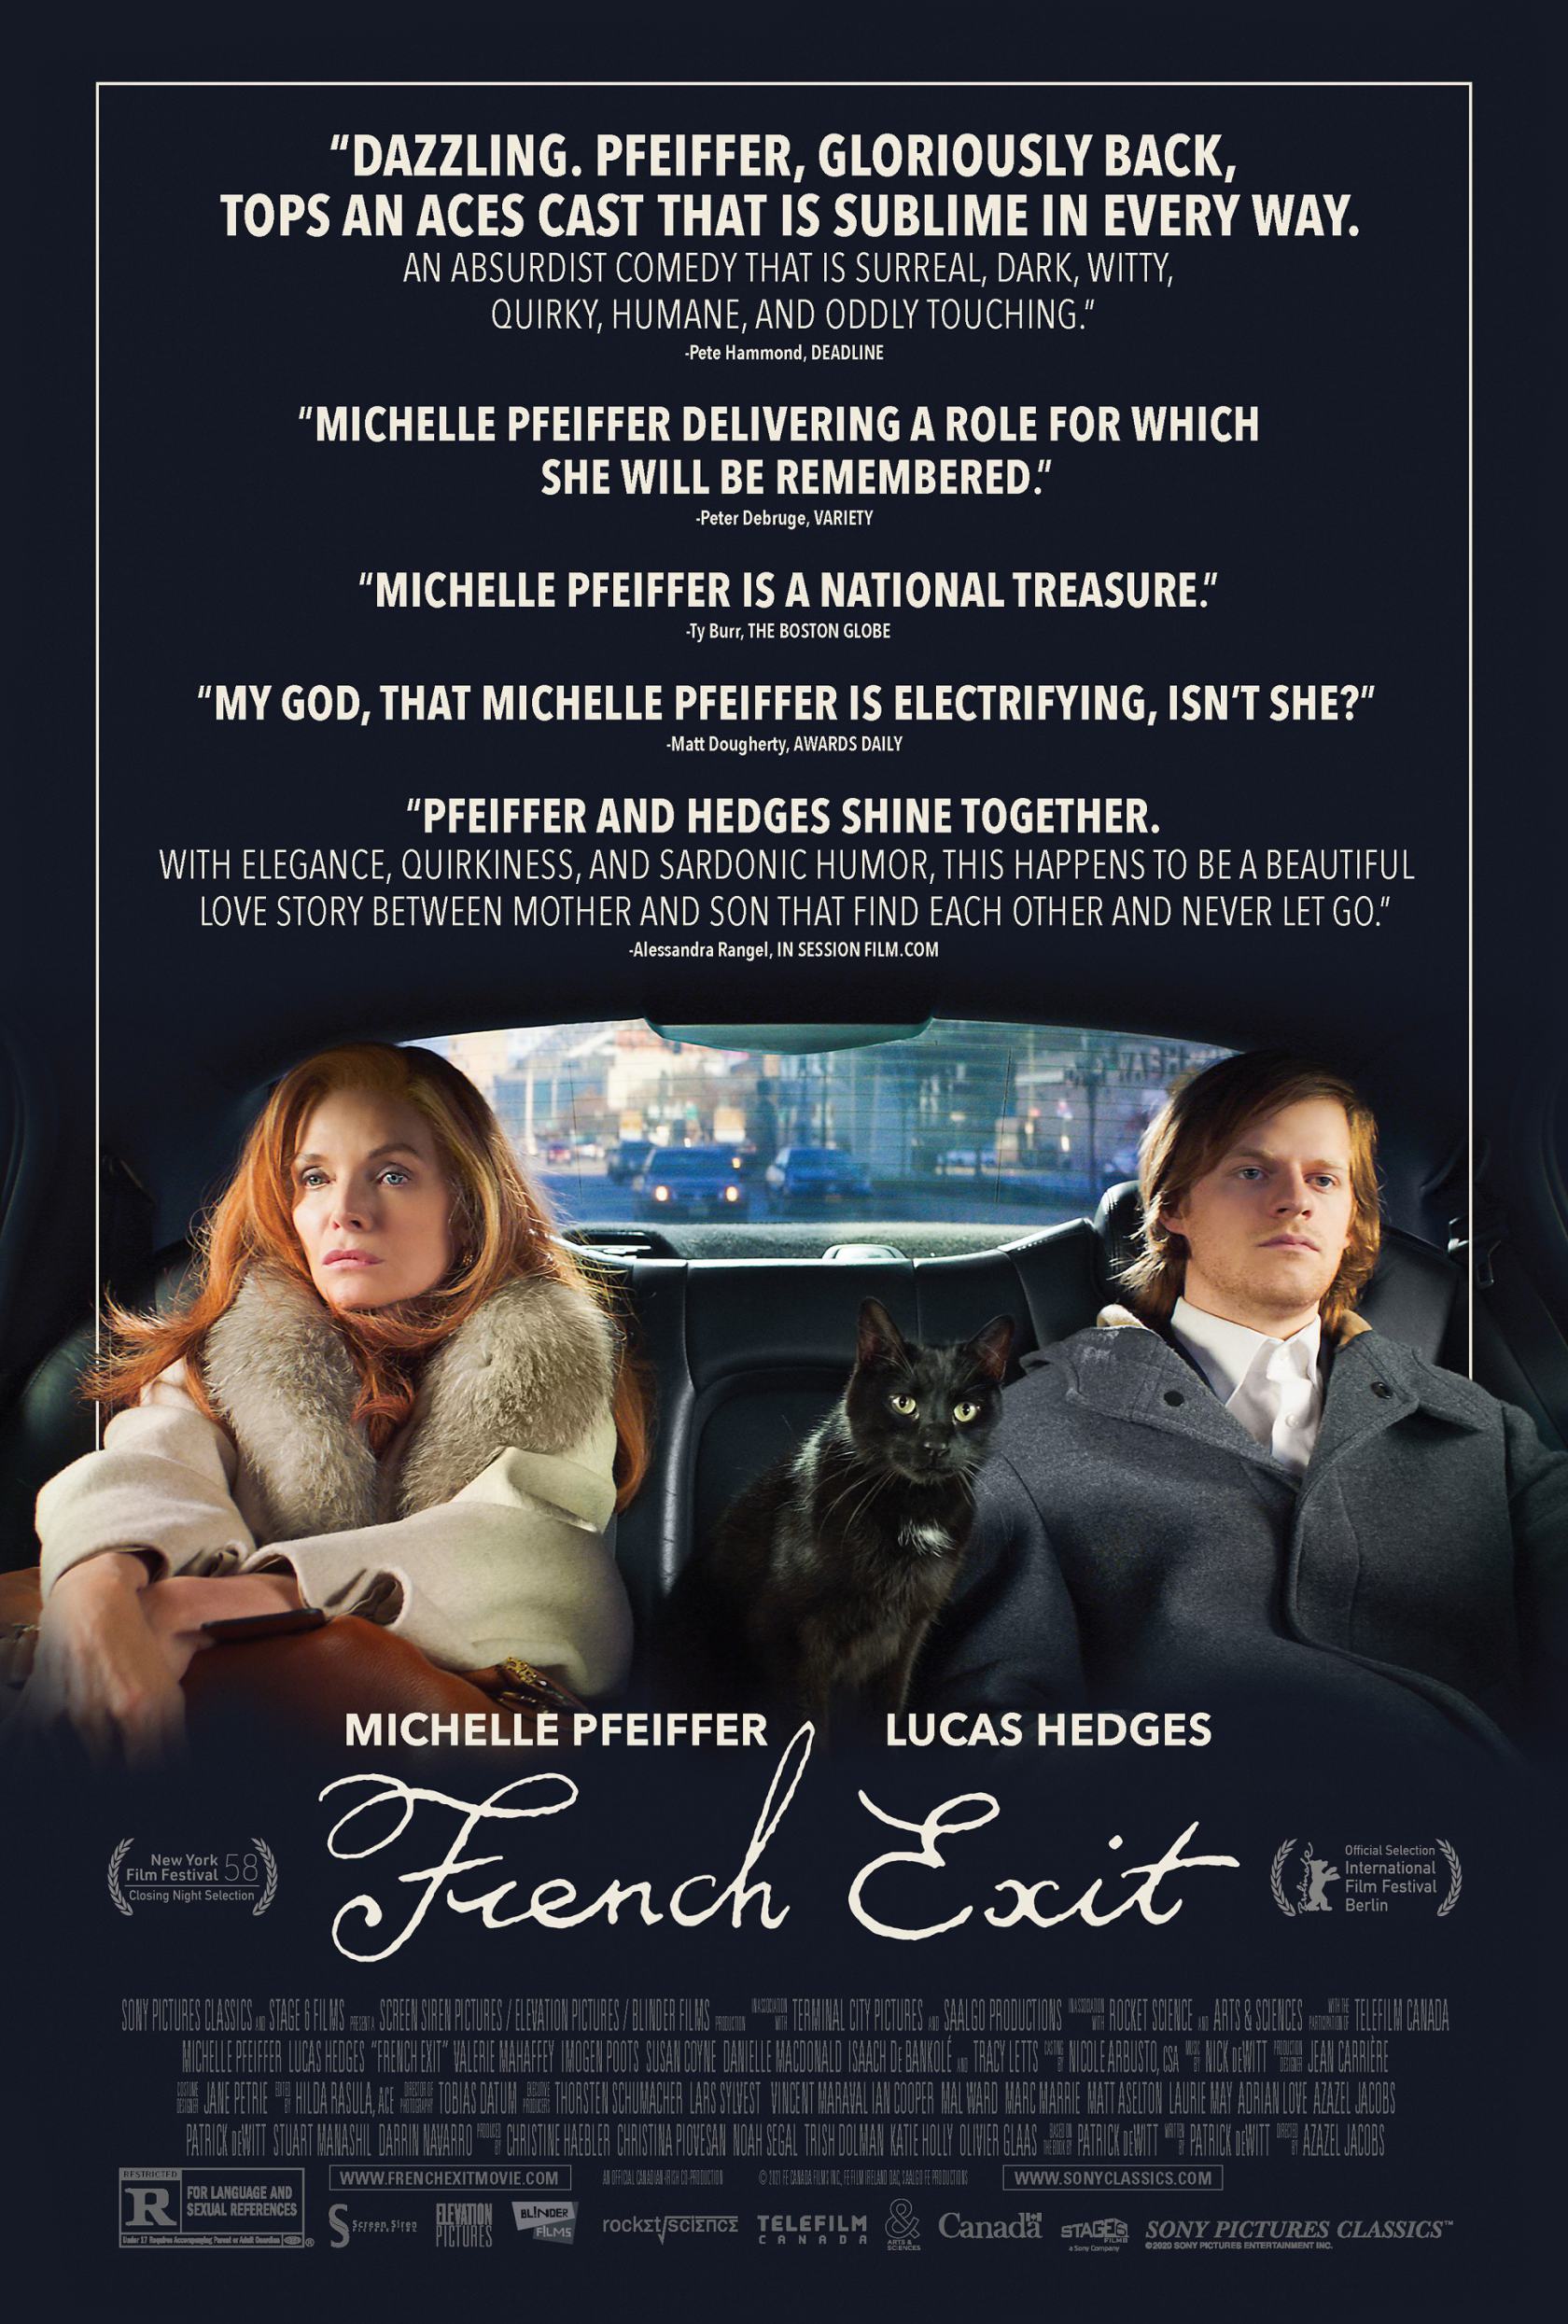 Phim French Exit nhận được rất nhiều lời khen ngợi từ giới chuyên môn (Ảnh: Internet).